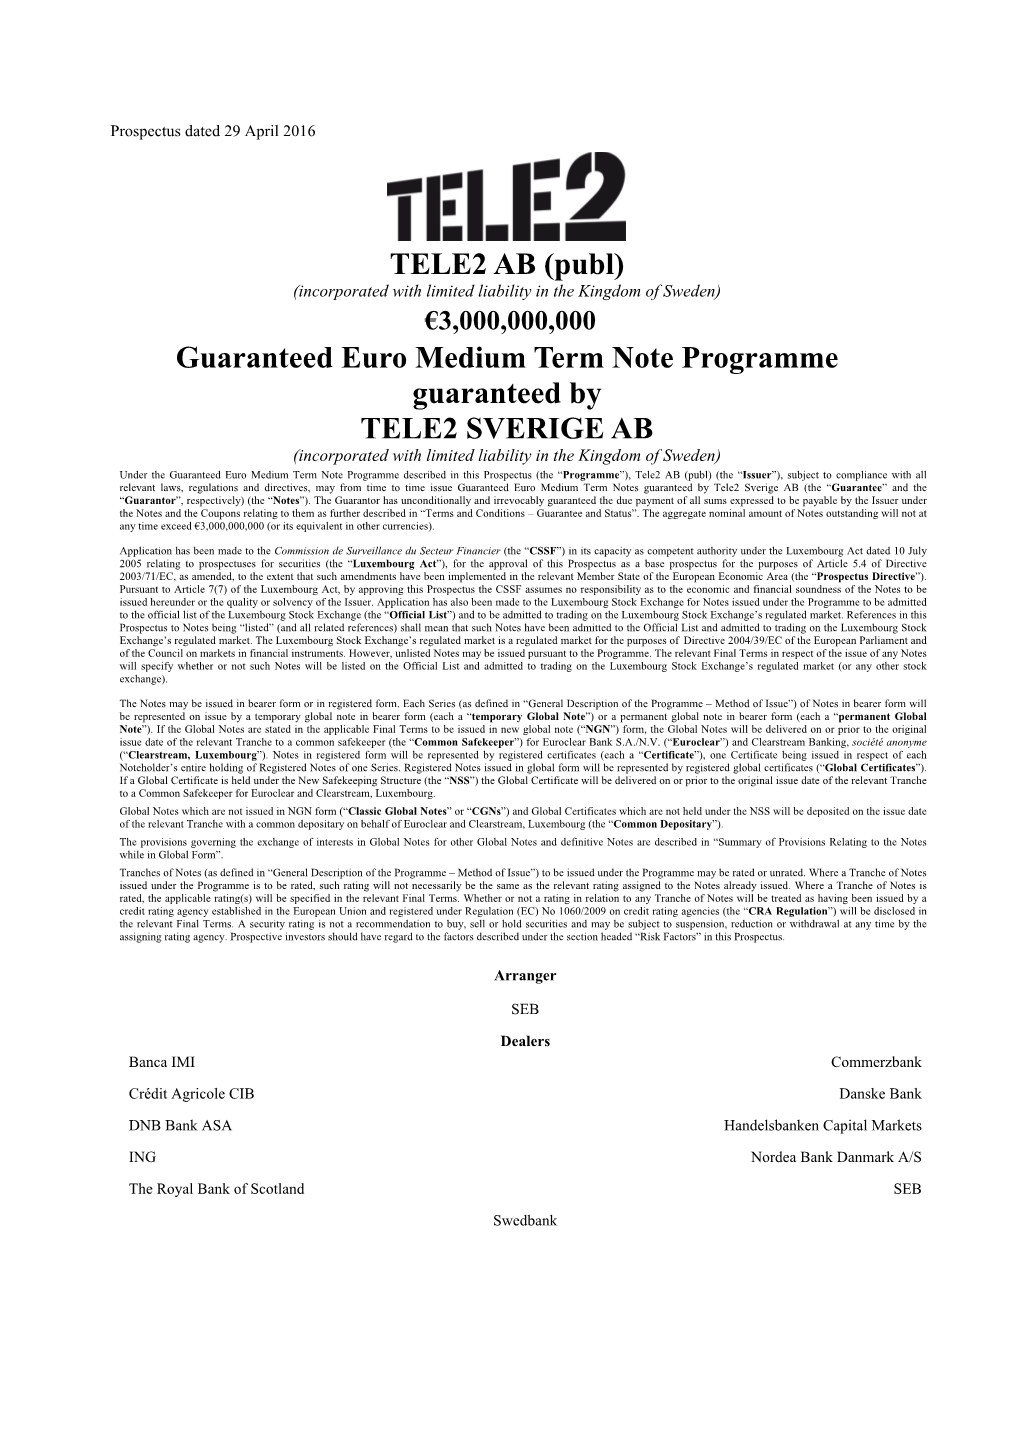 TELE2 AB (Publ) Guaranteed Euro Medium Term Note Programme Guaranteed by TELE2 SVERIGE AB